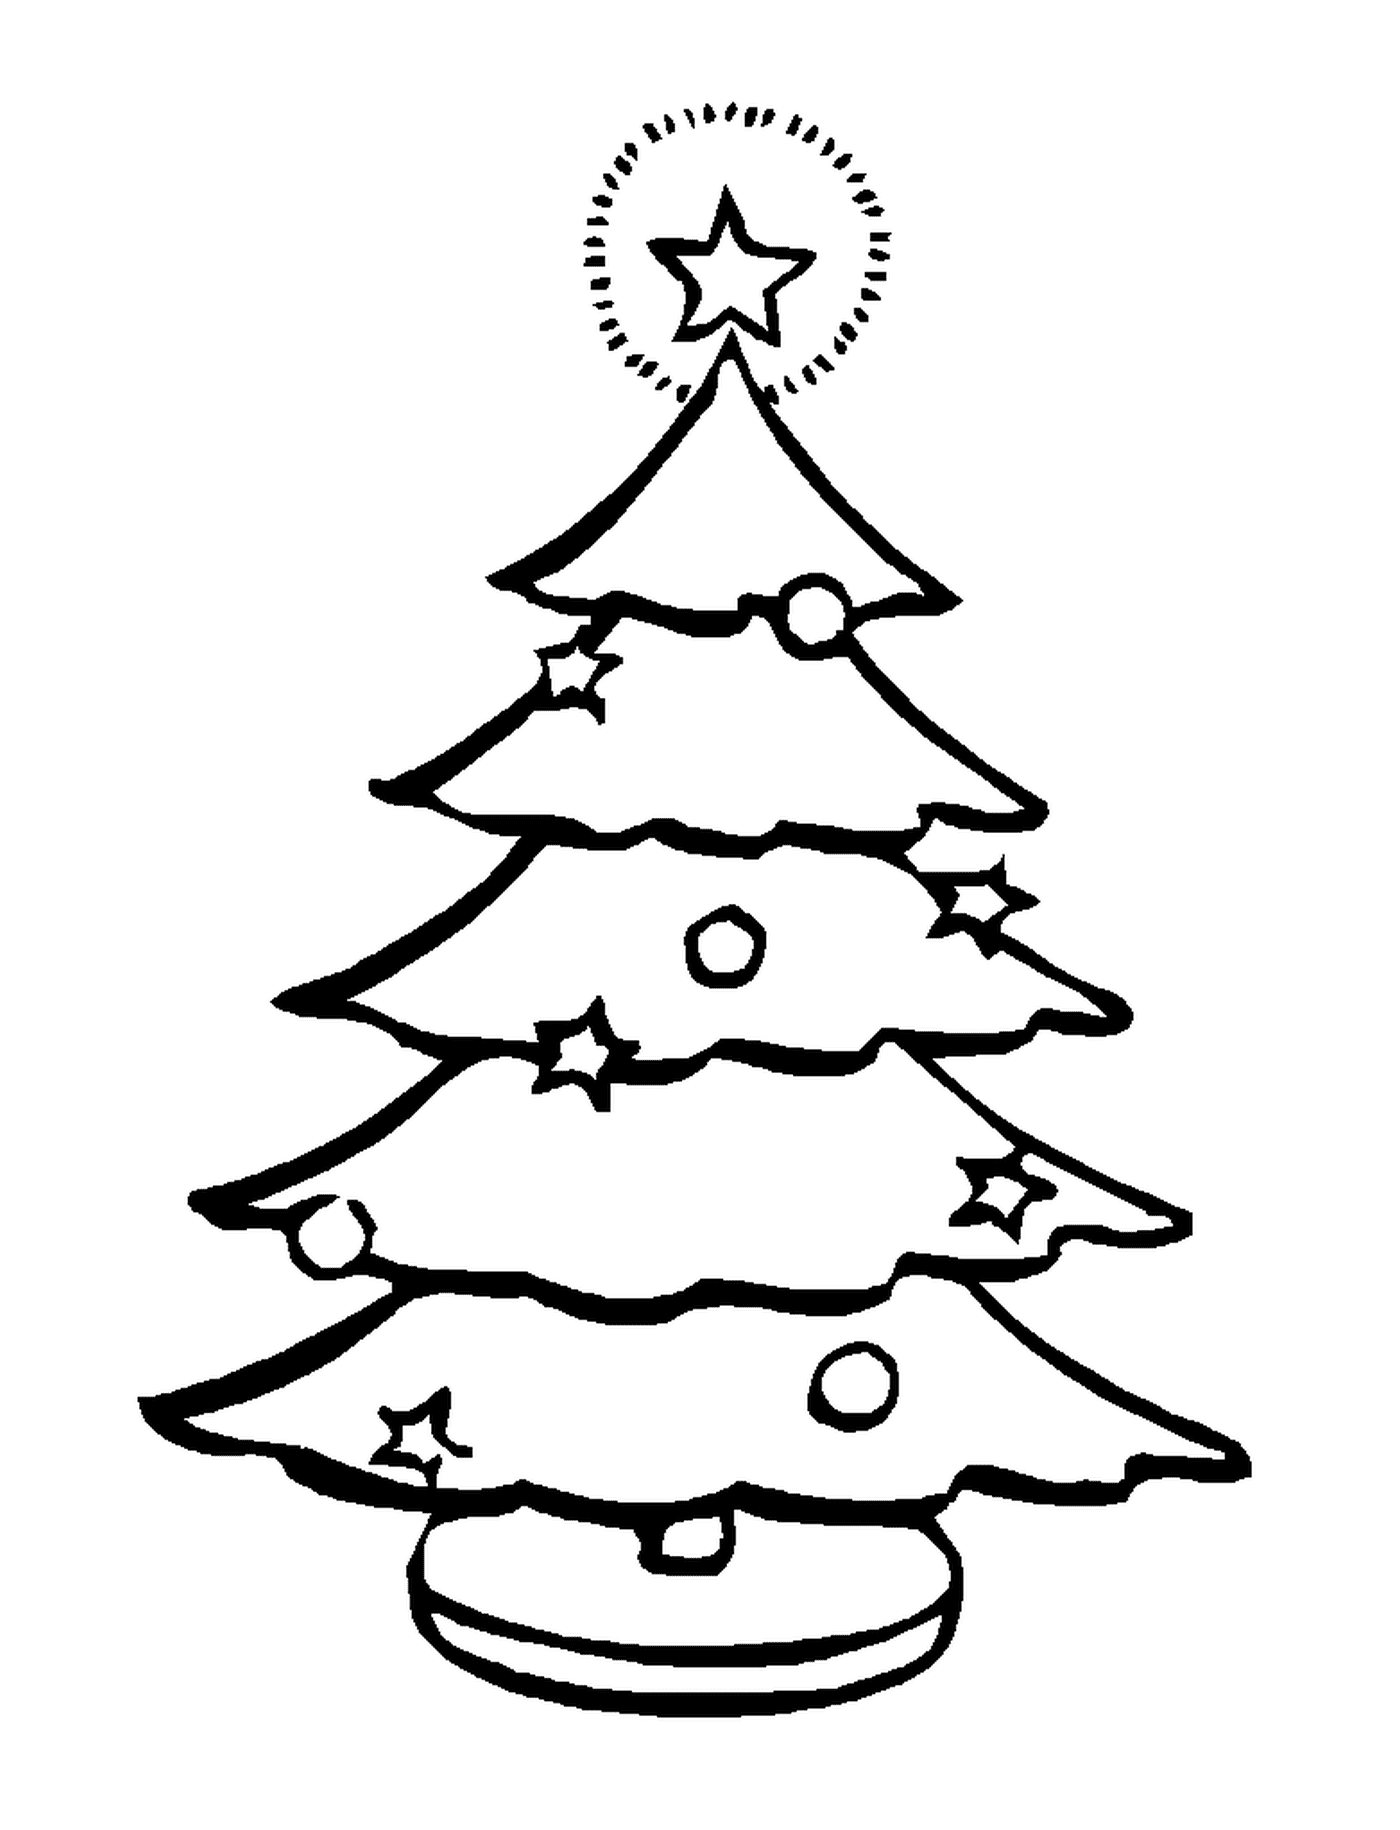  एक साधारण क्रिसमस का पेड़ 